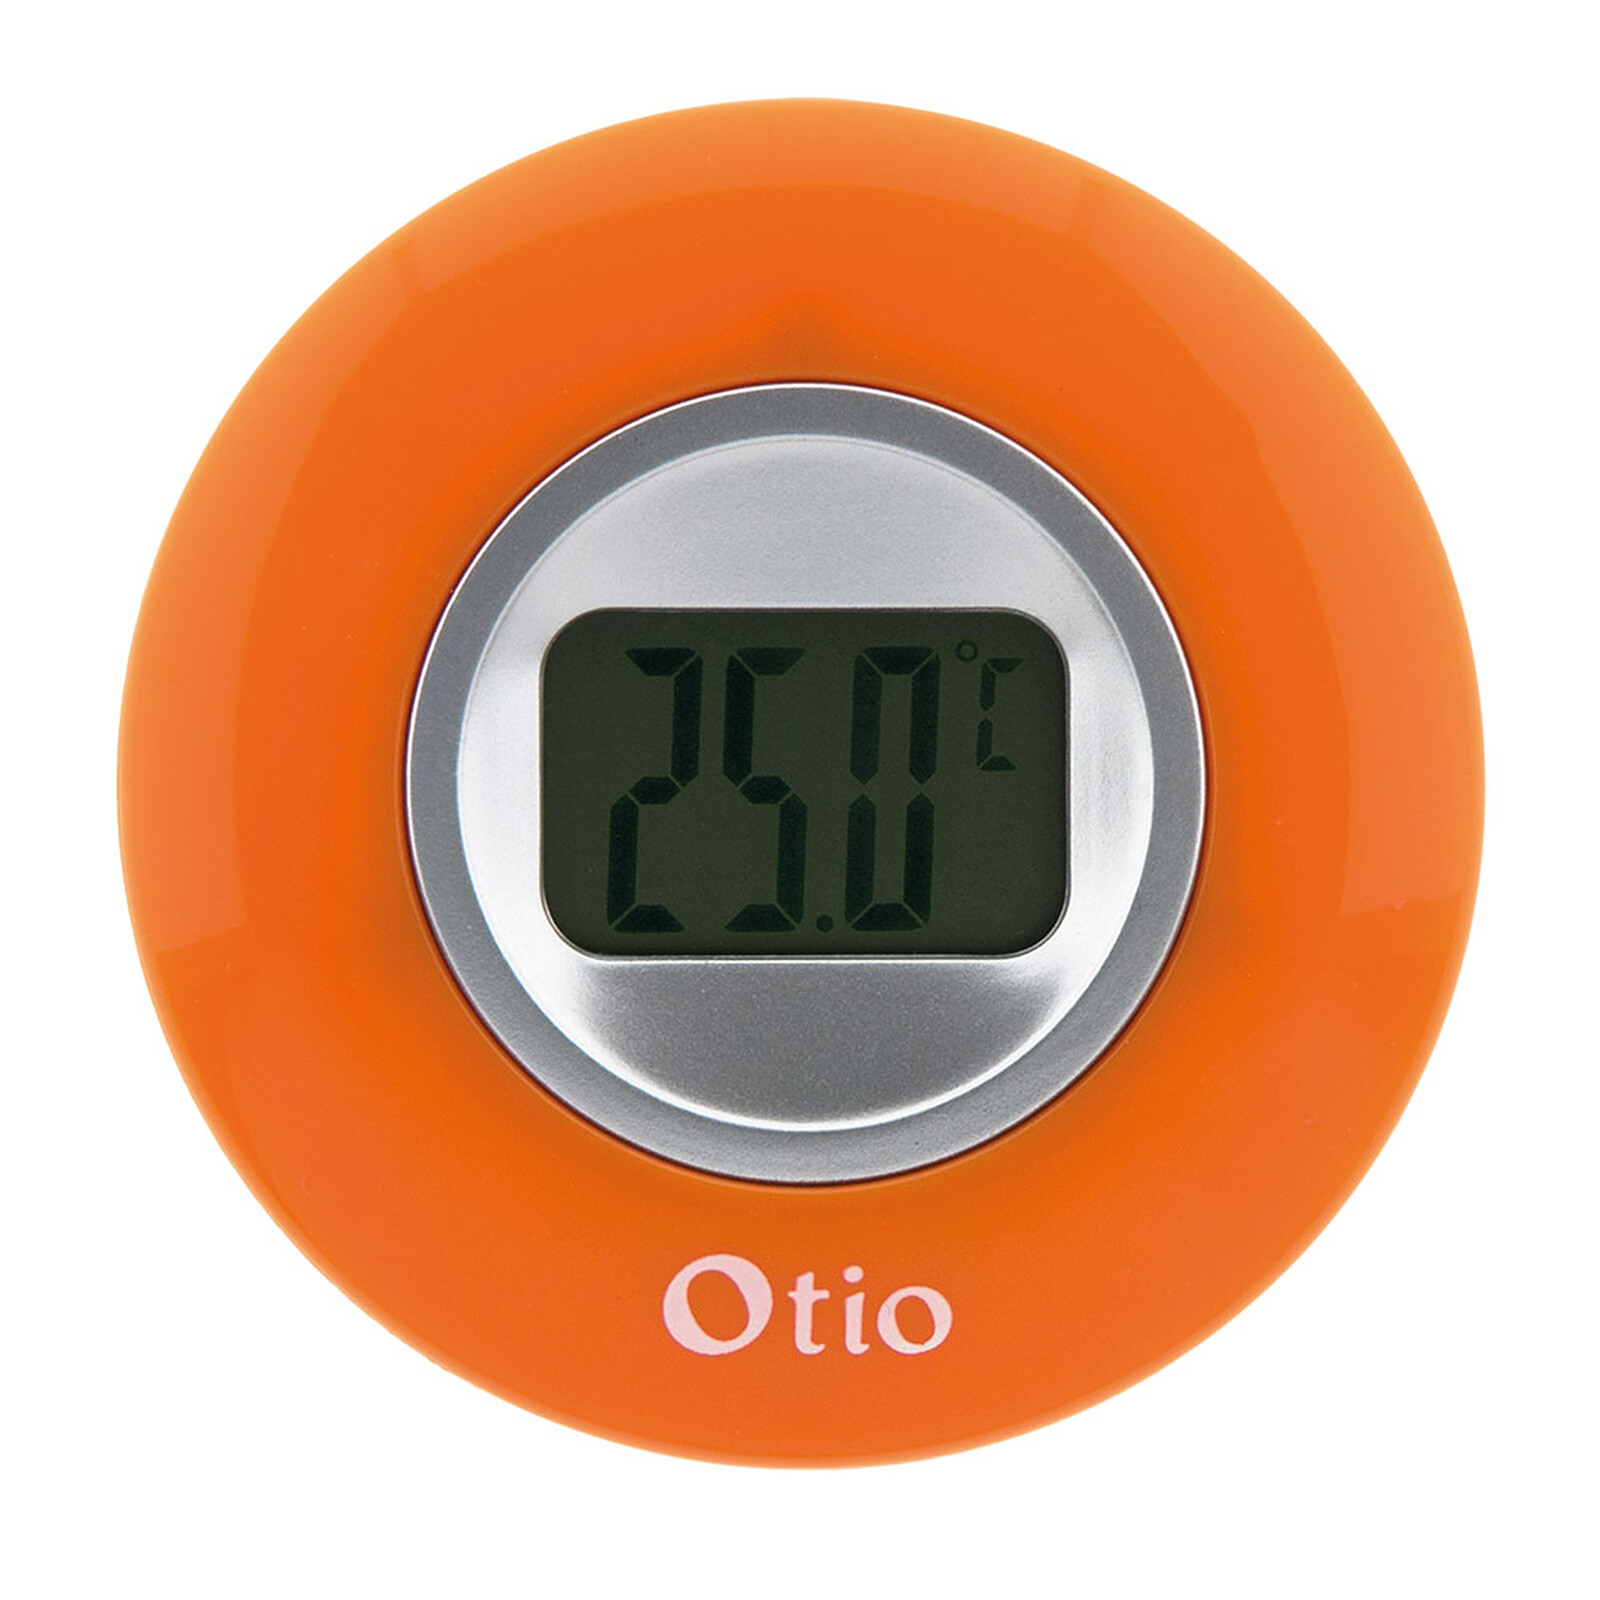 Thermomètre d'intérieur orange - Otio - Station Météo - LDLC